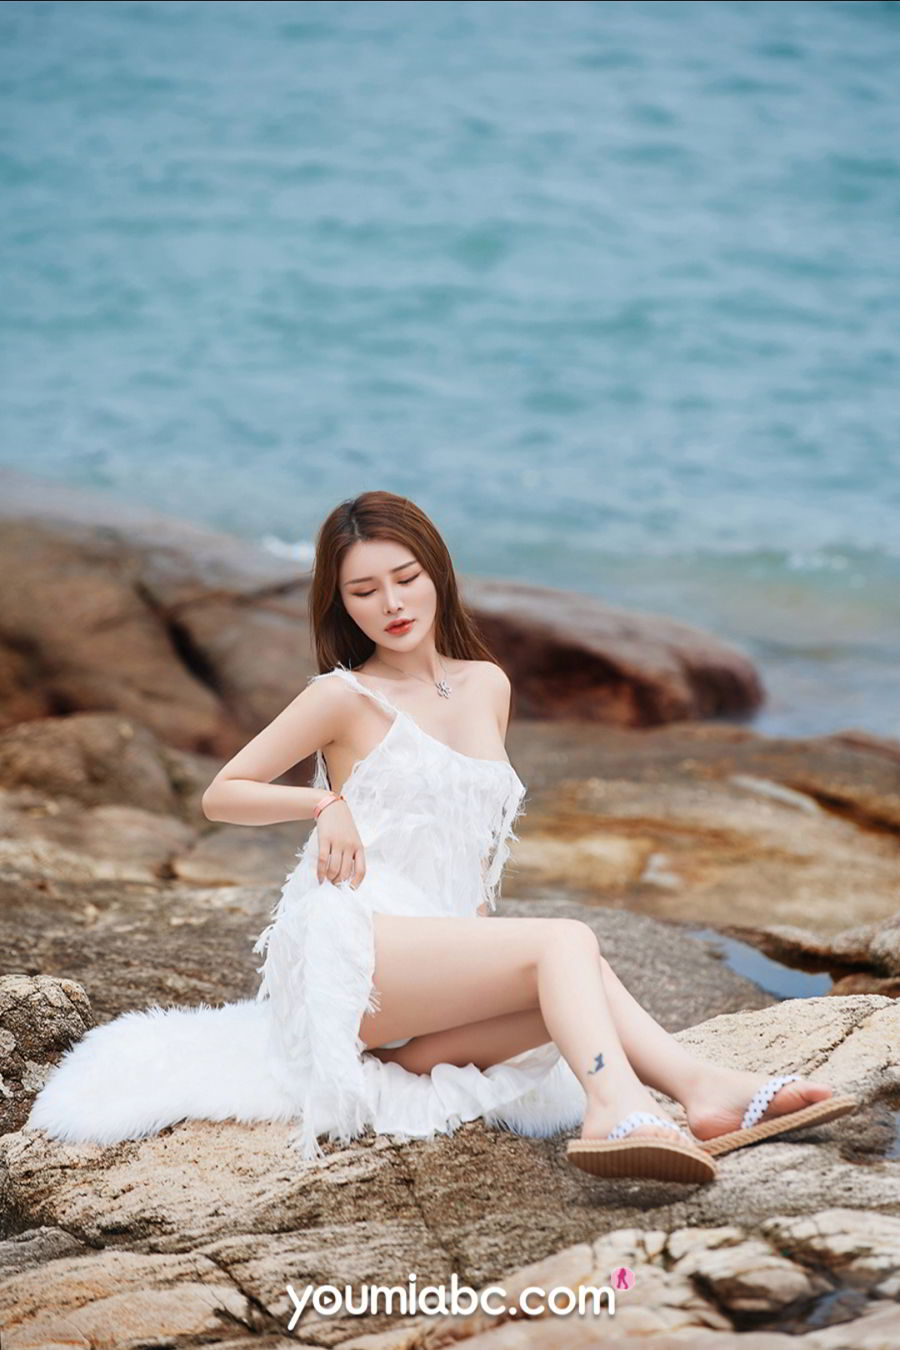 美女模特陈宇曦紧身泳衣细长双腿日光浴性感美图